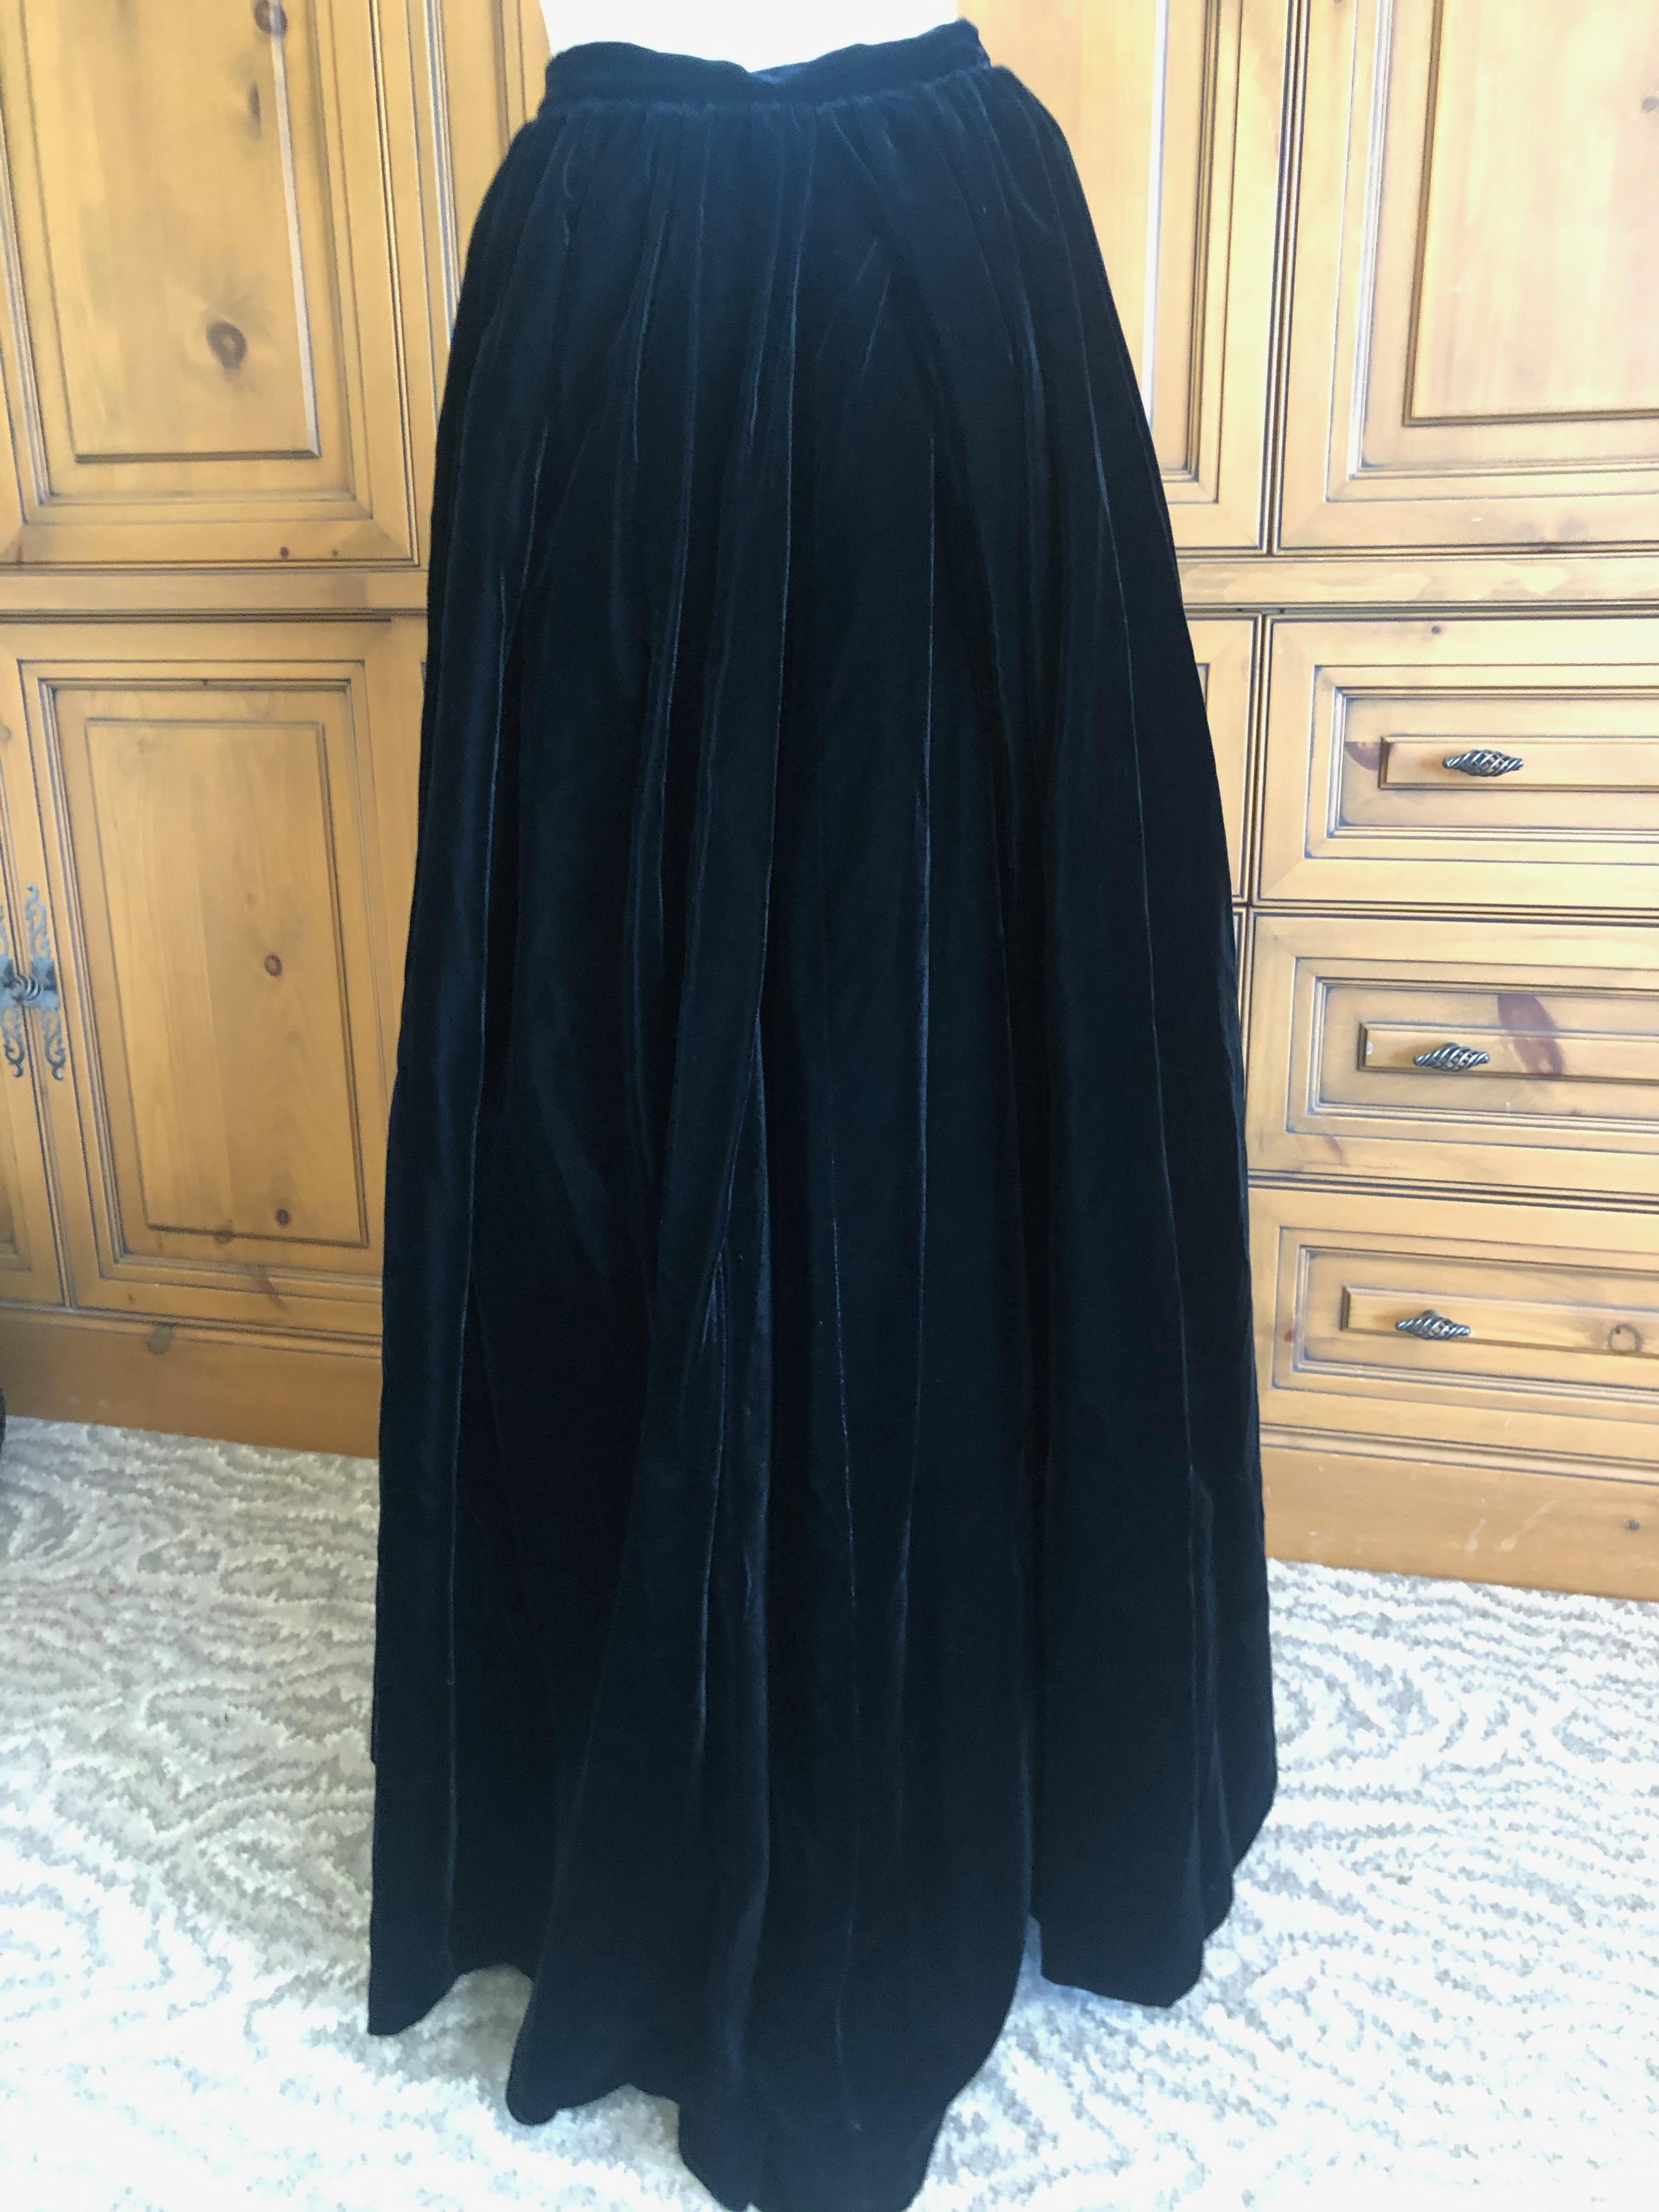 Yves Saint Laurent Rive Gauche 1970's Voluminous Black Velvet Ball Skirt .
This is very long 
Size 40
Waist 24